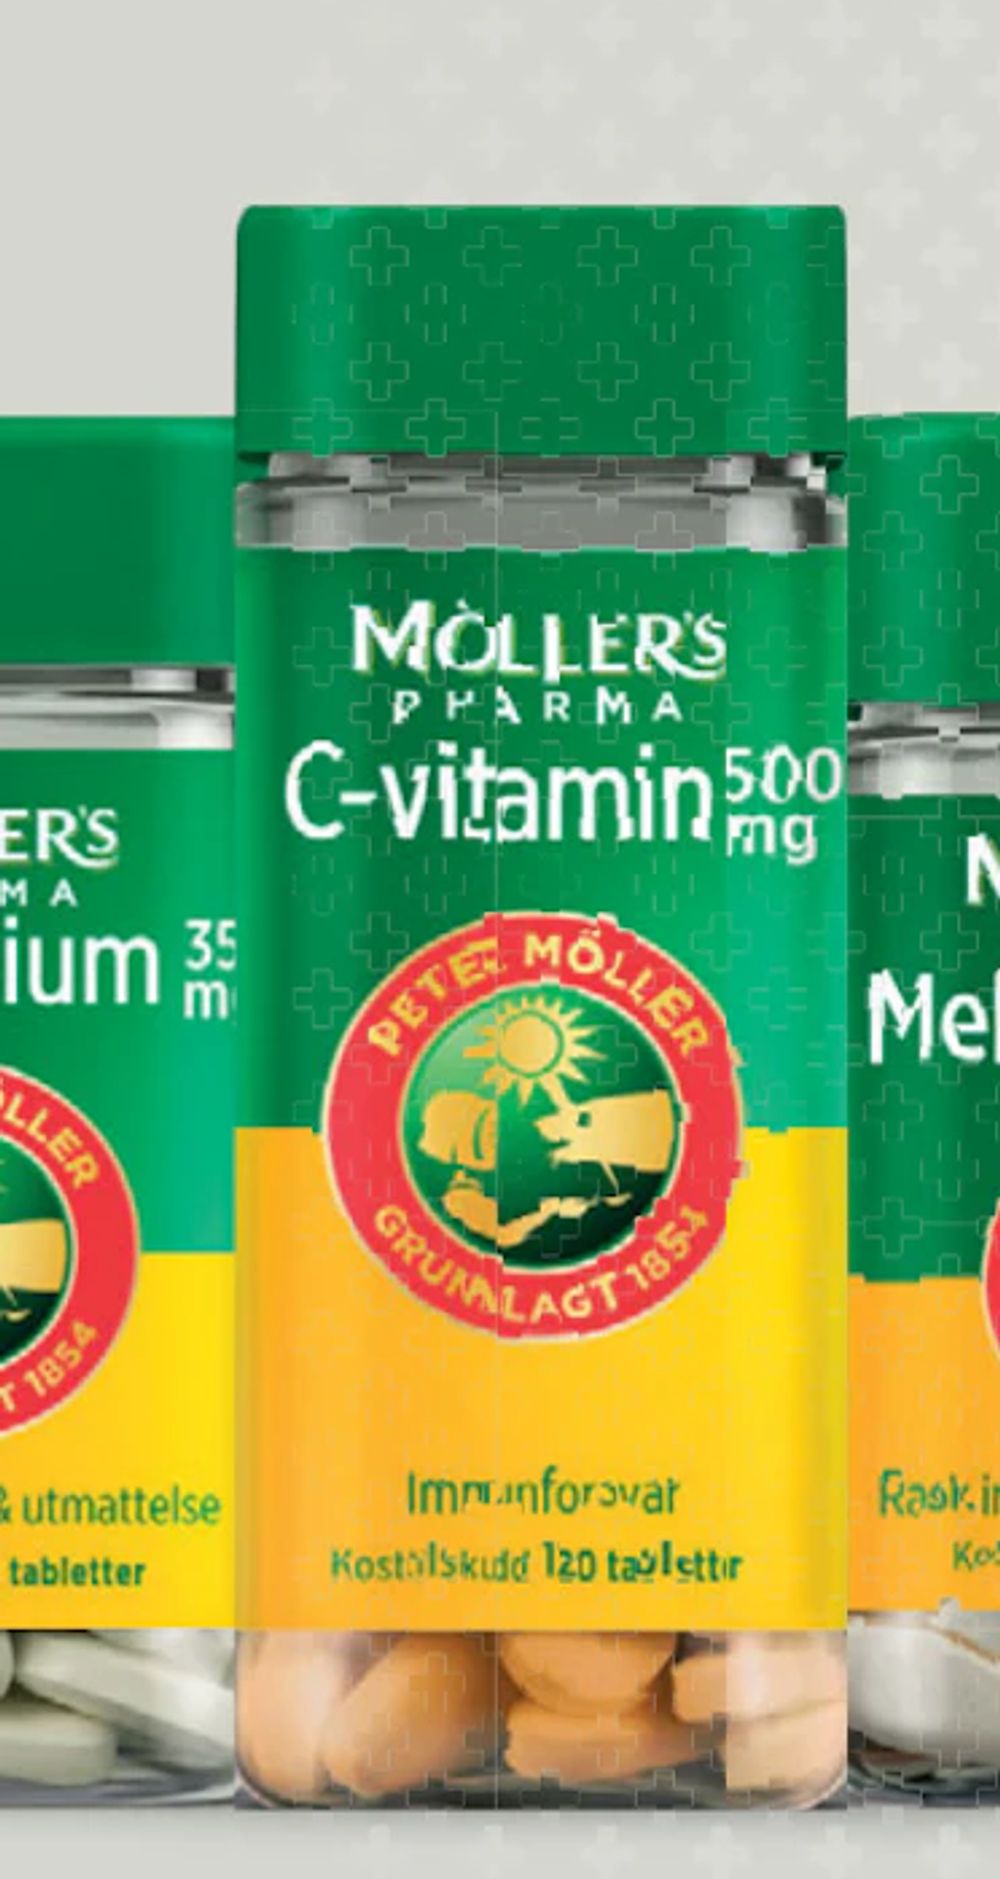 Tilbud på Möller's Pharma C-vitamin 500 mg fra Vitusapotek til 79,90 kr